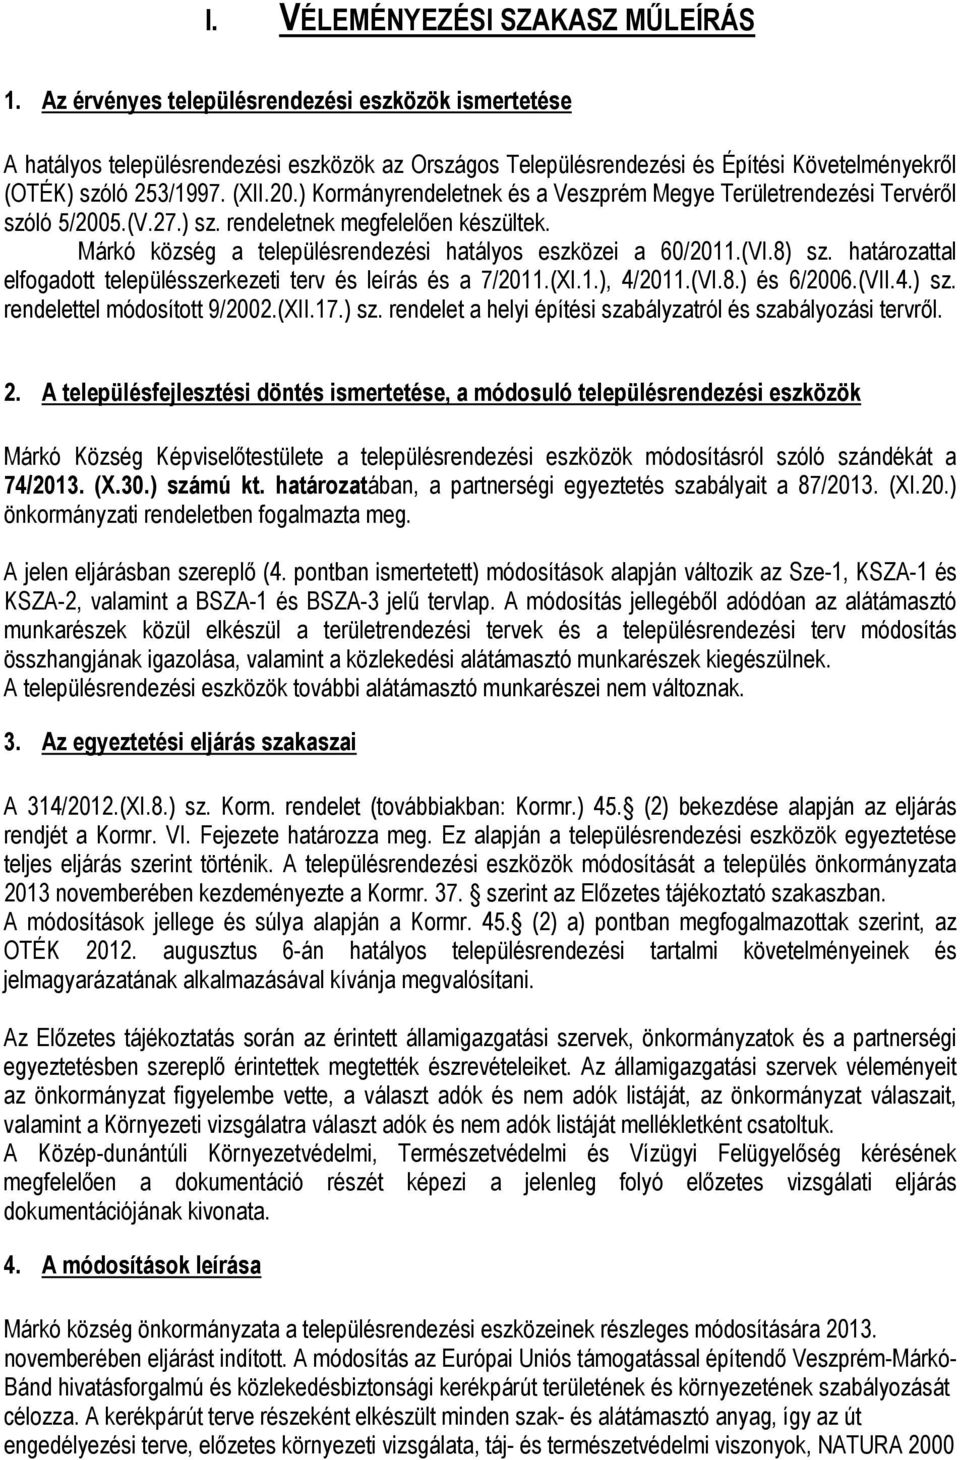 ) Kormányrendeletnek és a Veszprém Megye Területrendezési Tervéről szóló 5/2005.(V.27.) sz. rendeletnek megfelelően készültek. Márkó község a településrendezési hatályos eszközei a 60/2011.(VI.8) sz.